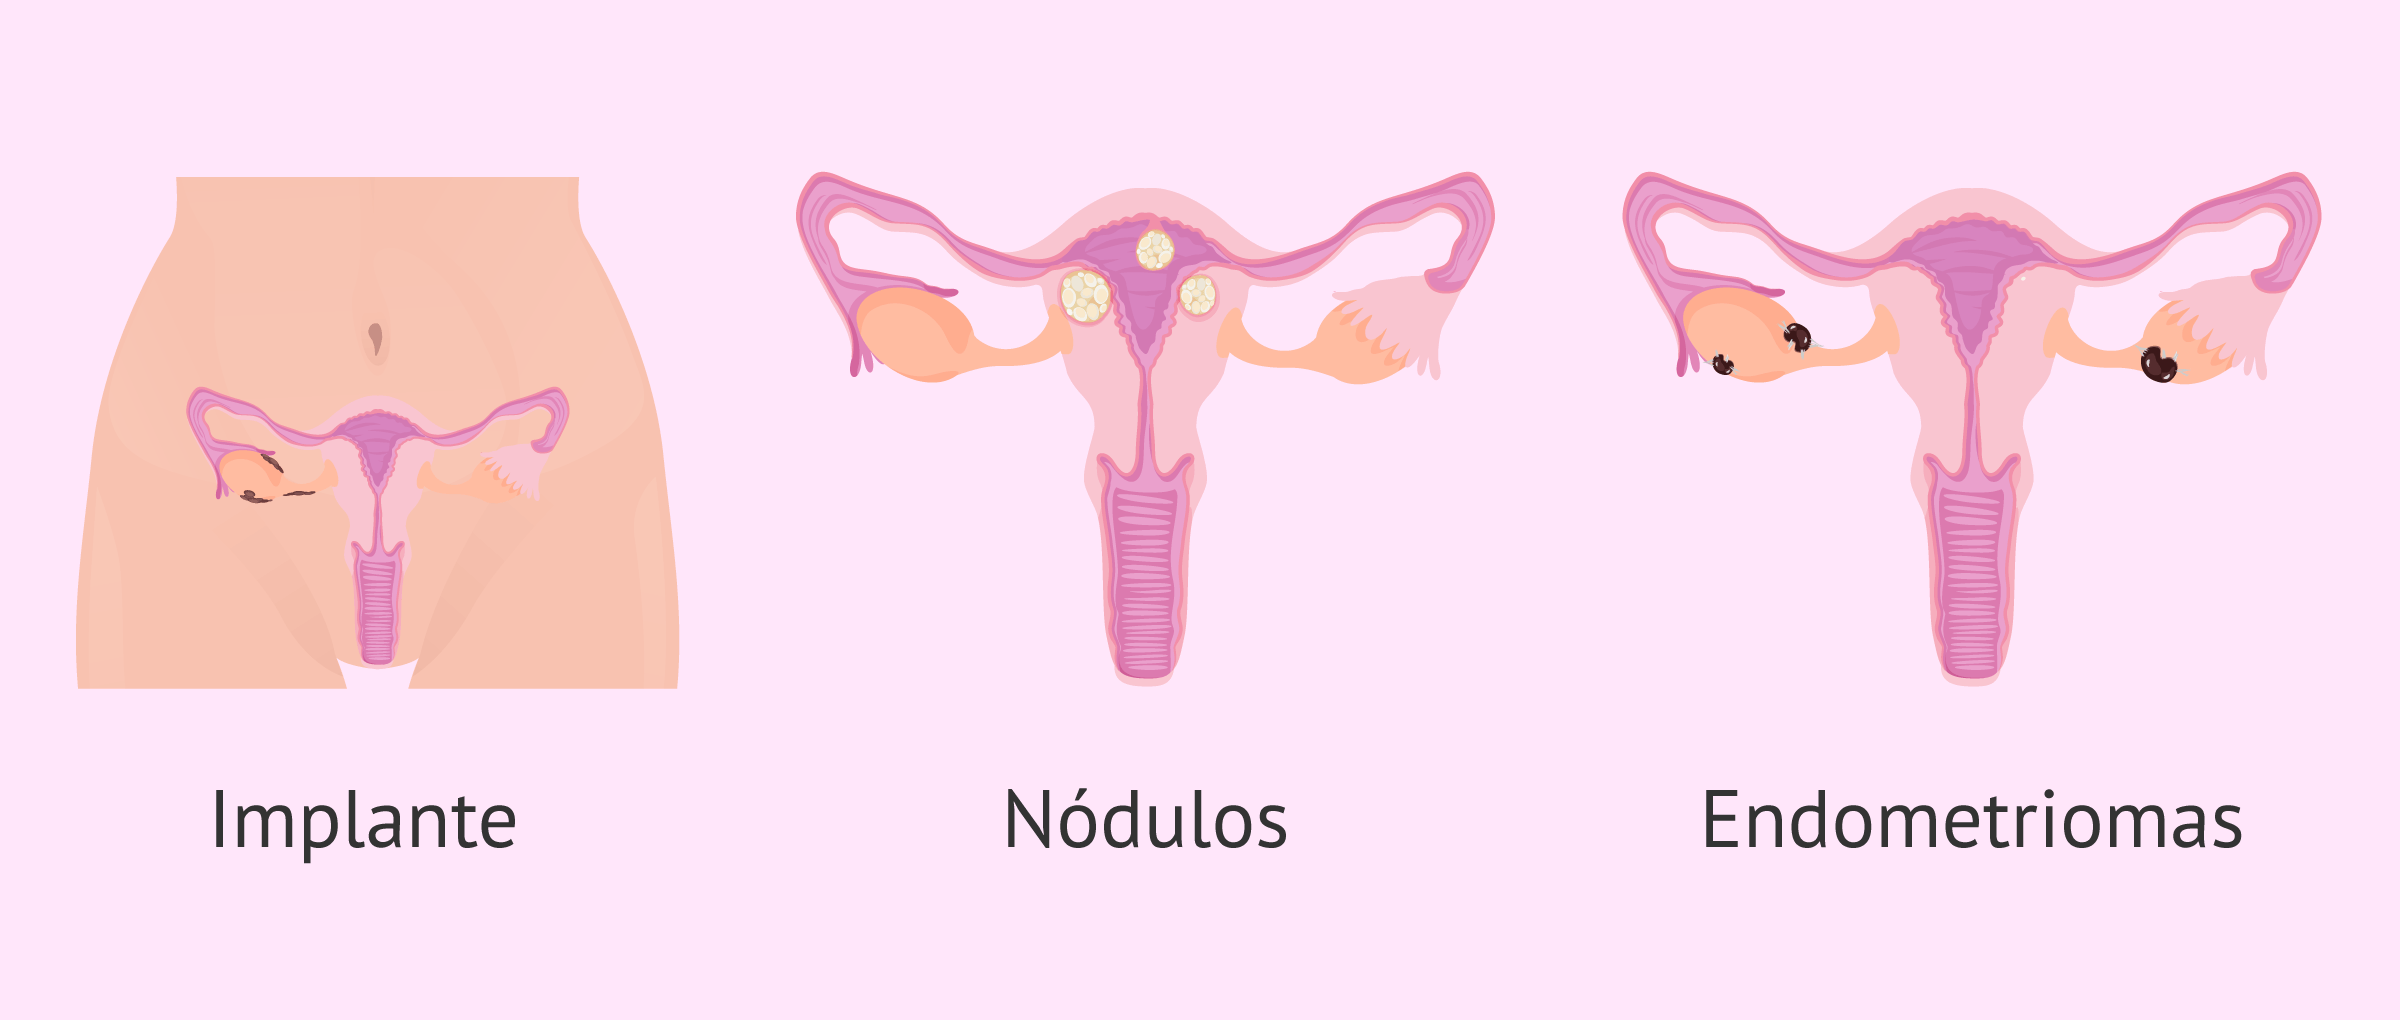 Placas endometriales según la gravedad